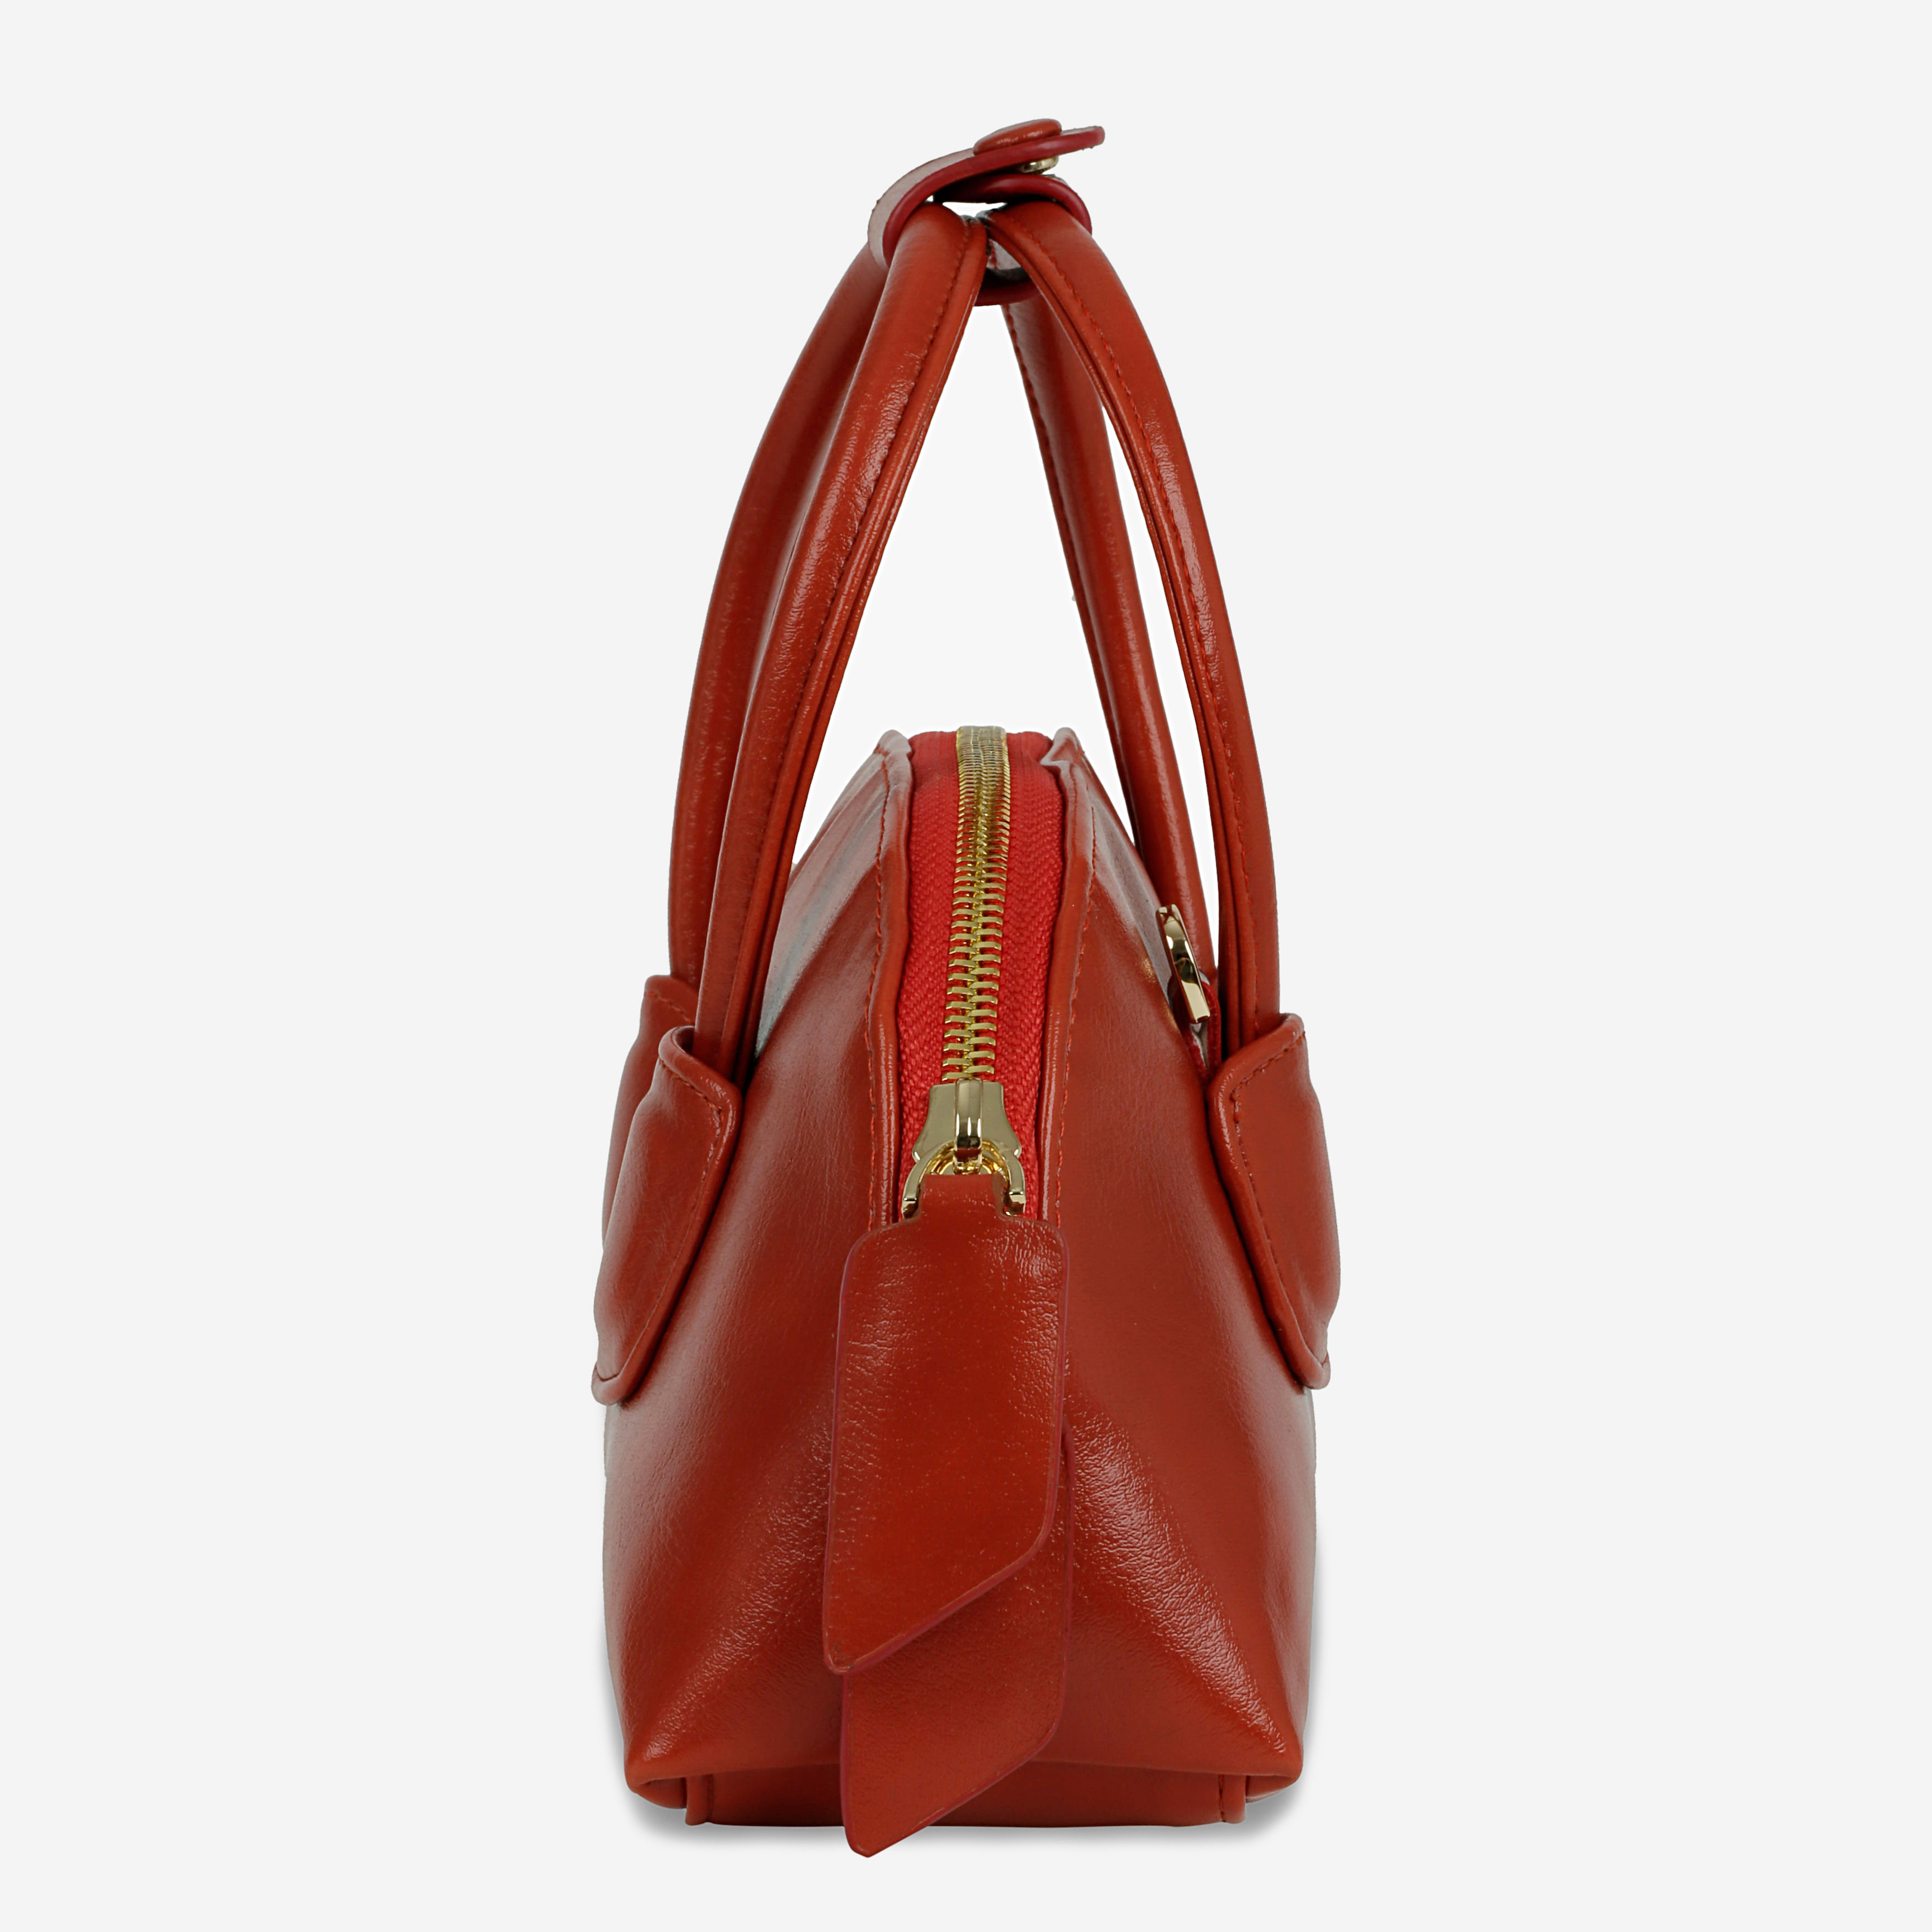 Túi xách TACOS màu đỏ - CHAUTFIFTH